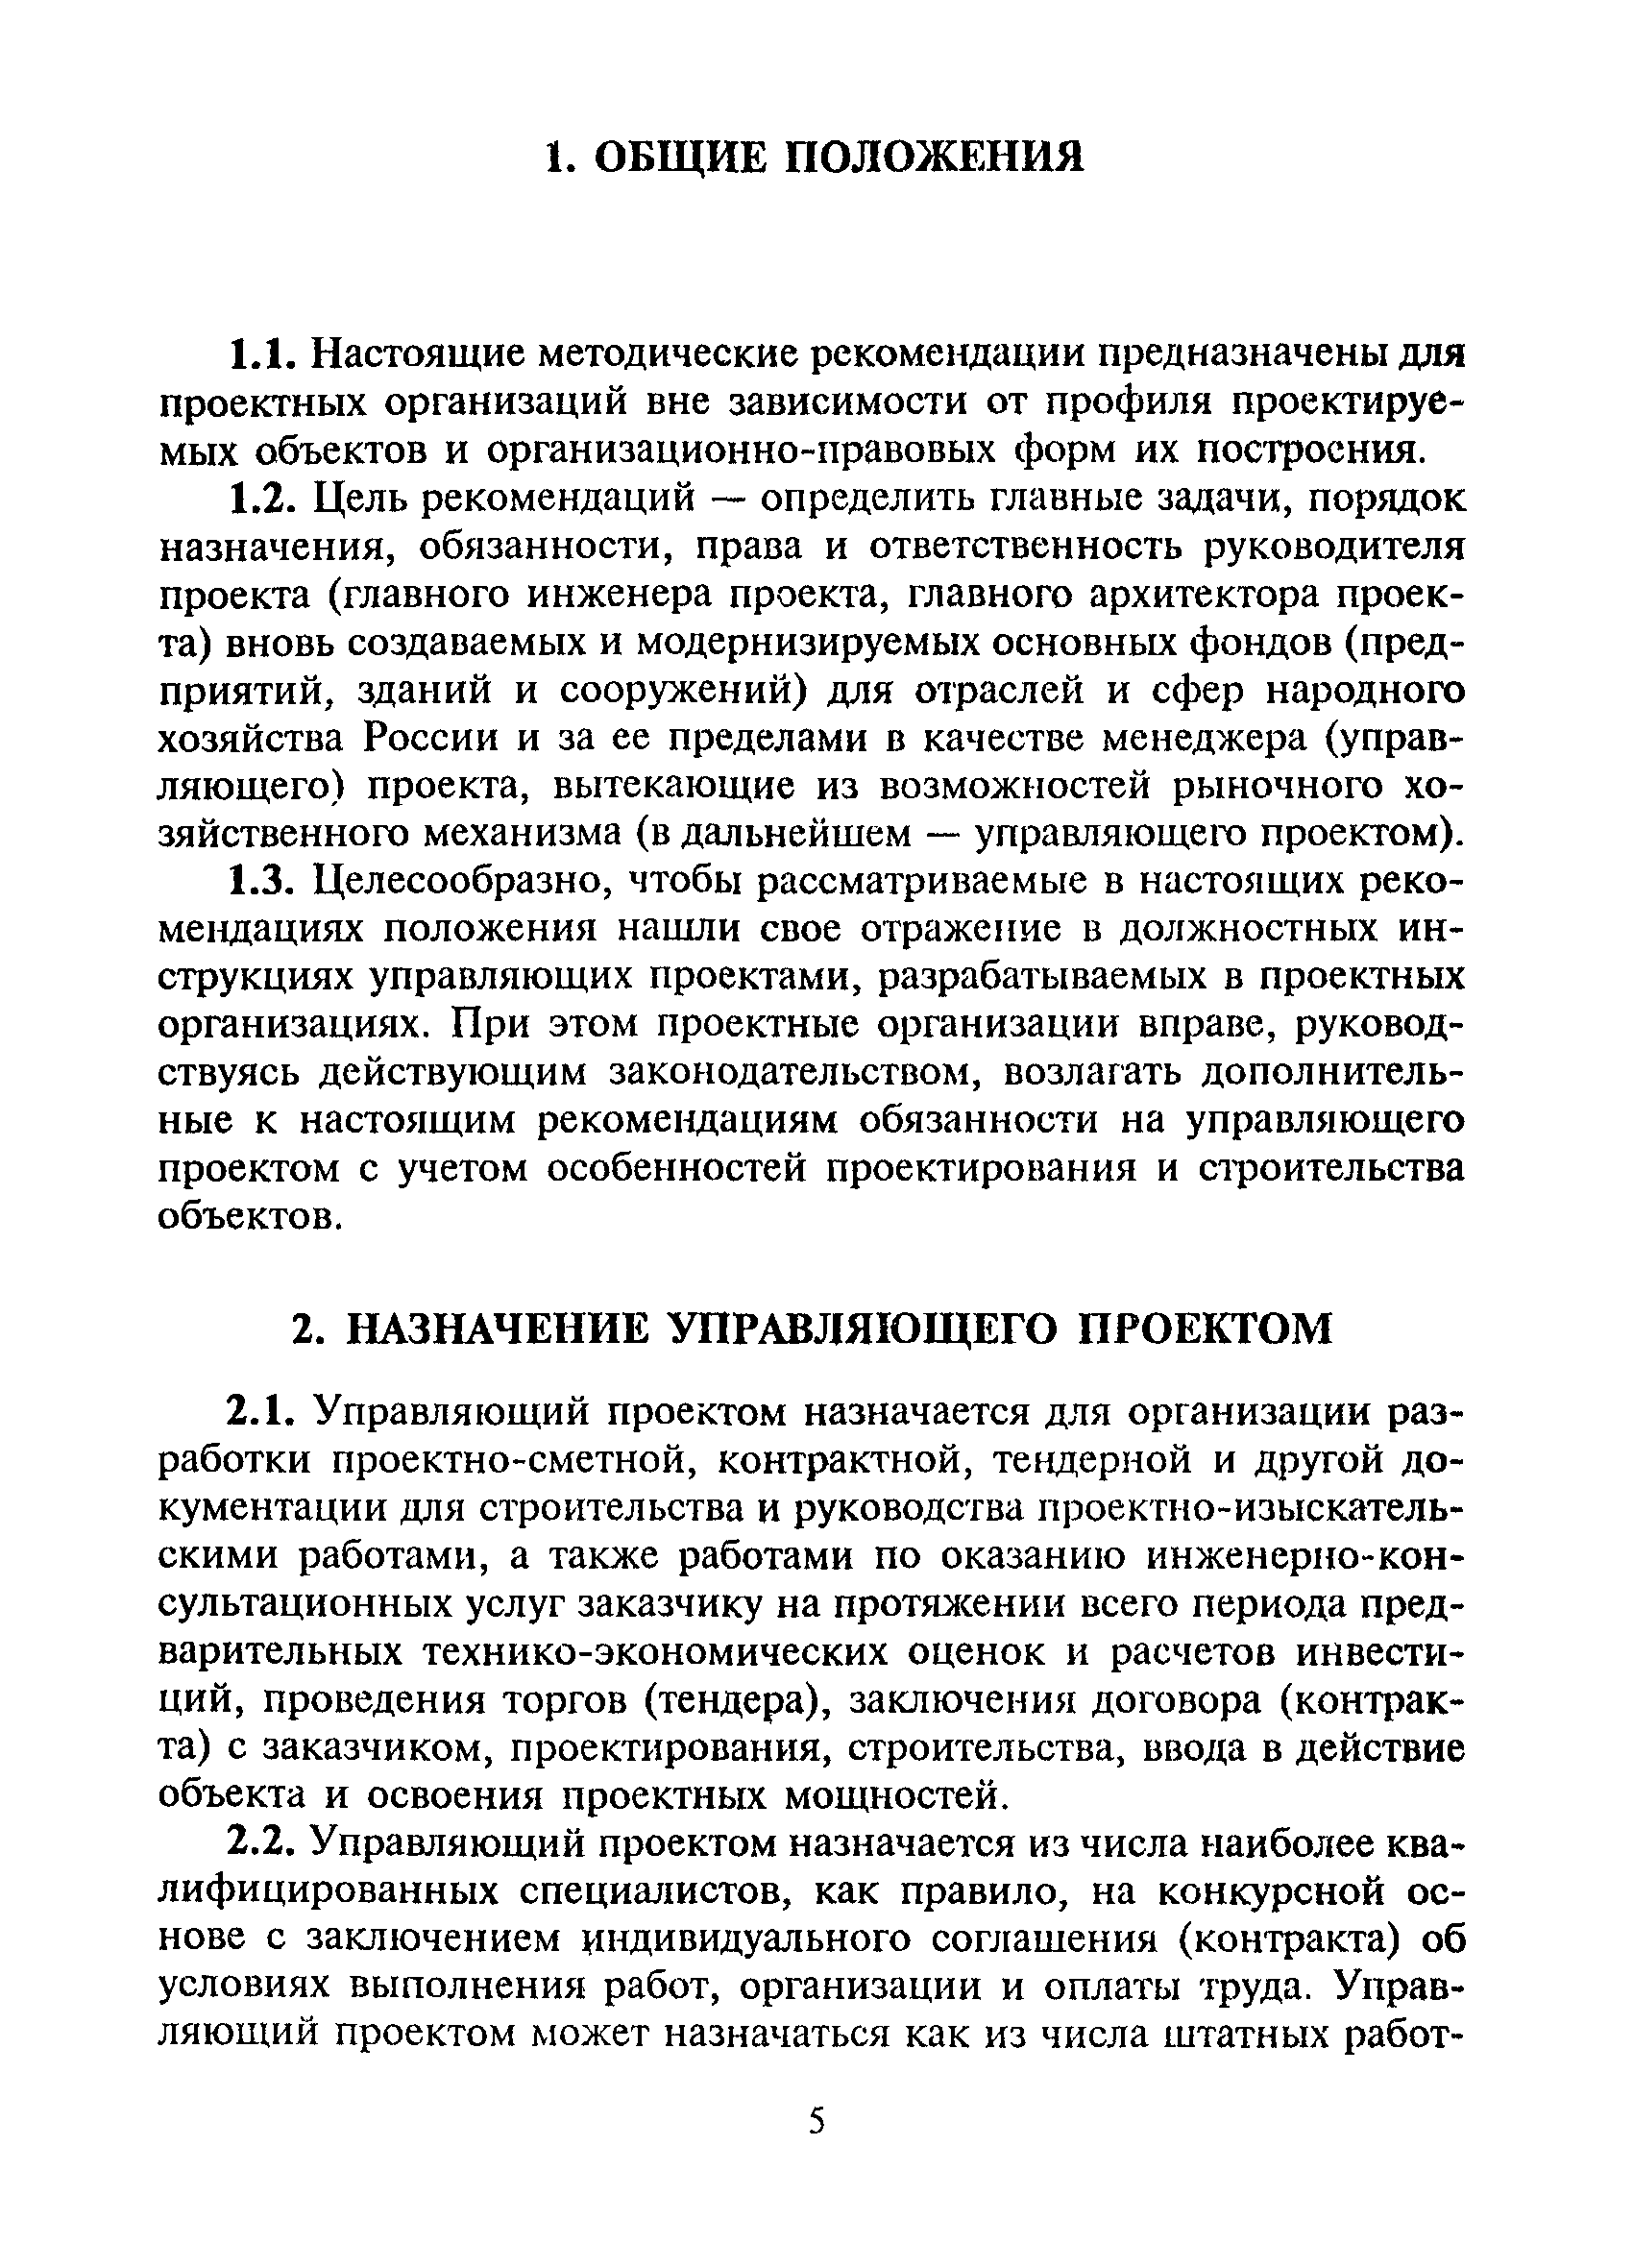 МДС 11-11.2000